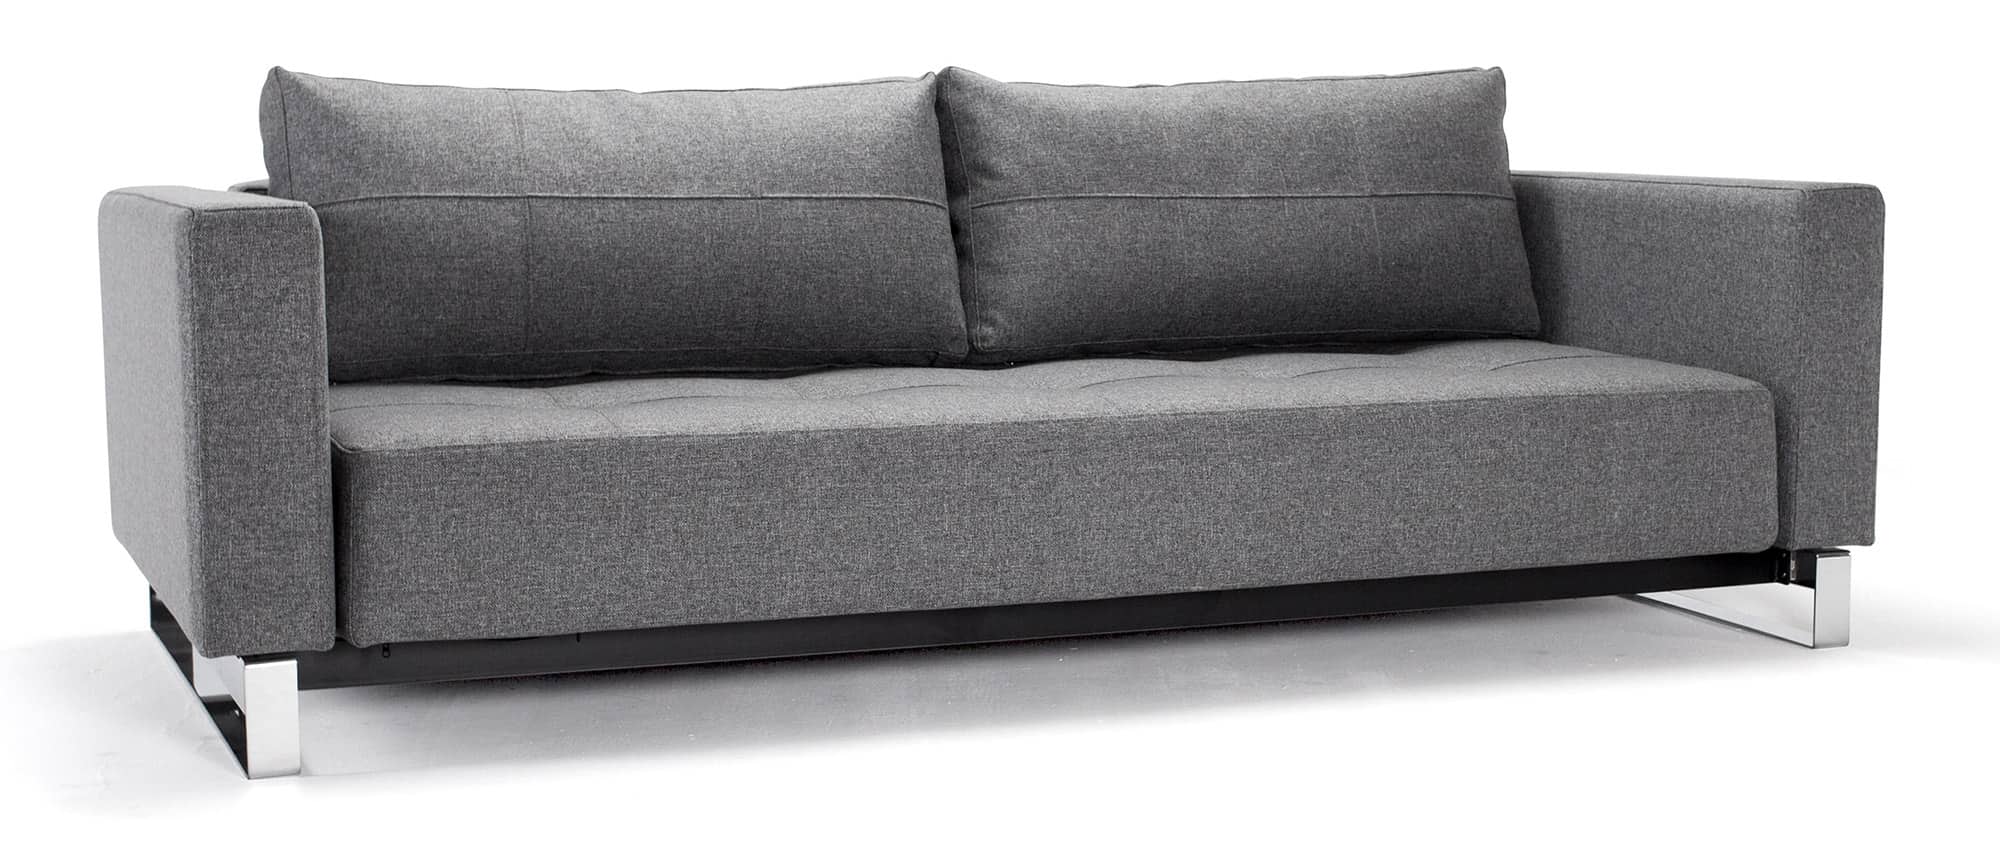 graues Lounge Sofa CASSIUS DELUXE EXCESS von Innovation, Gästebett für 2 Personen - Liegefläche 155x200 cm